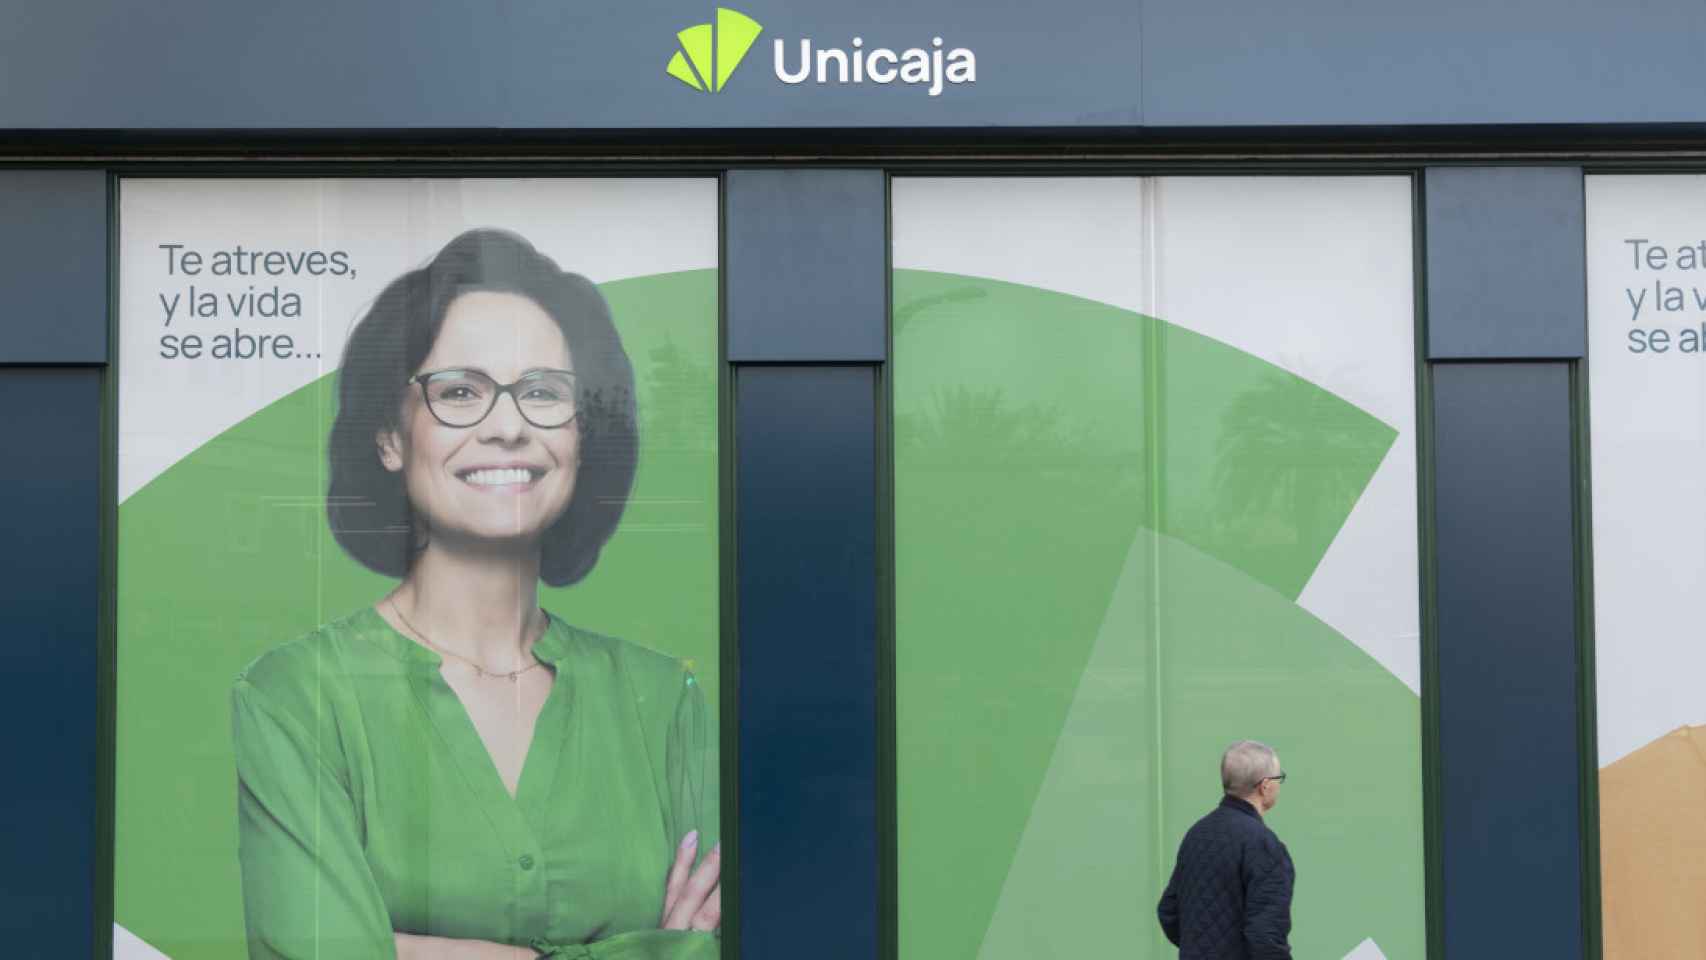 El nuevo logo de Unicaja ya puede verse en las oficinas del banco.